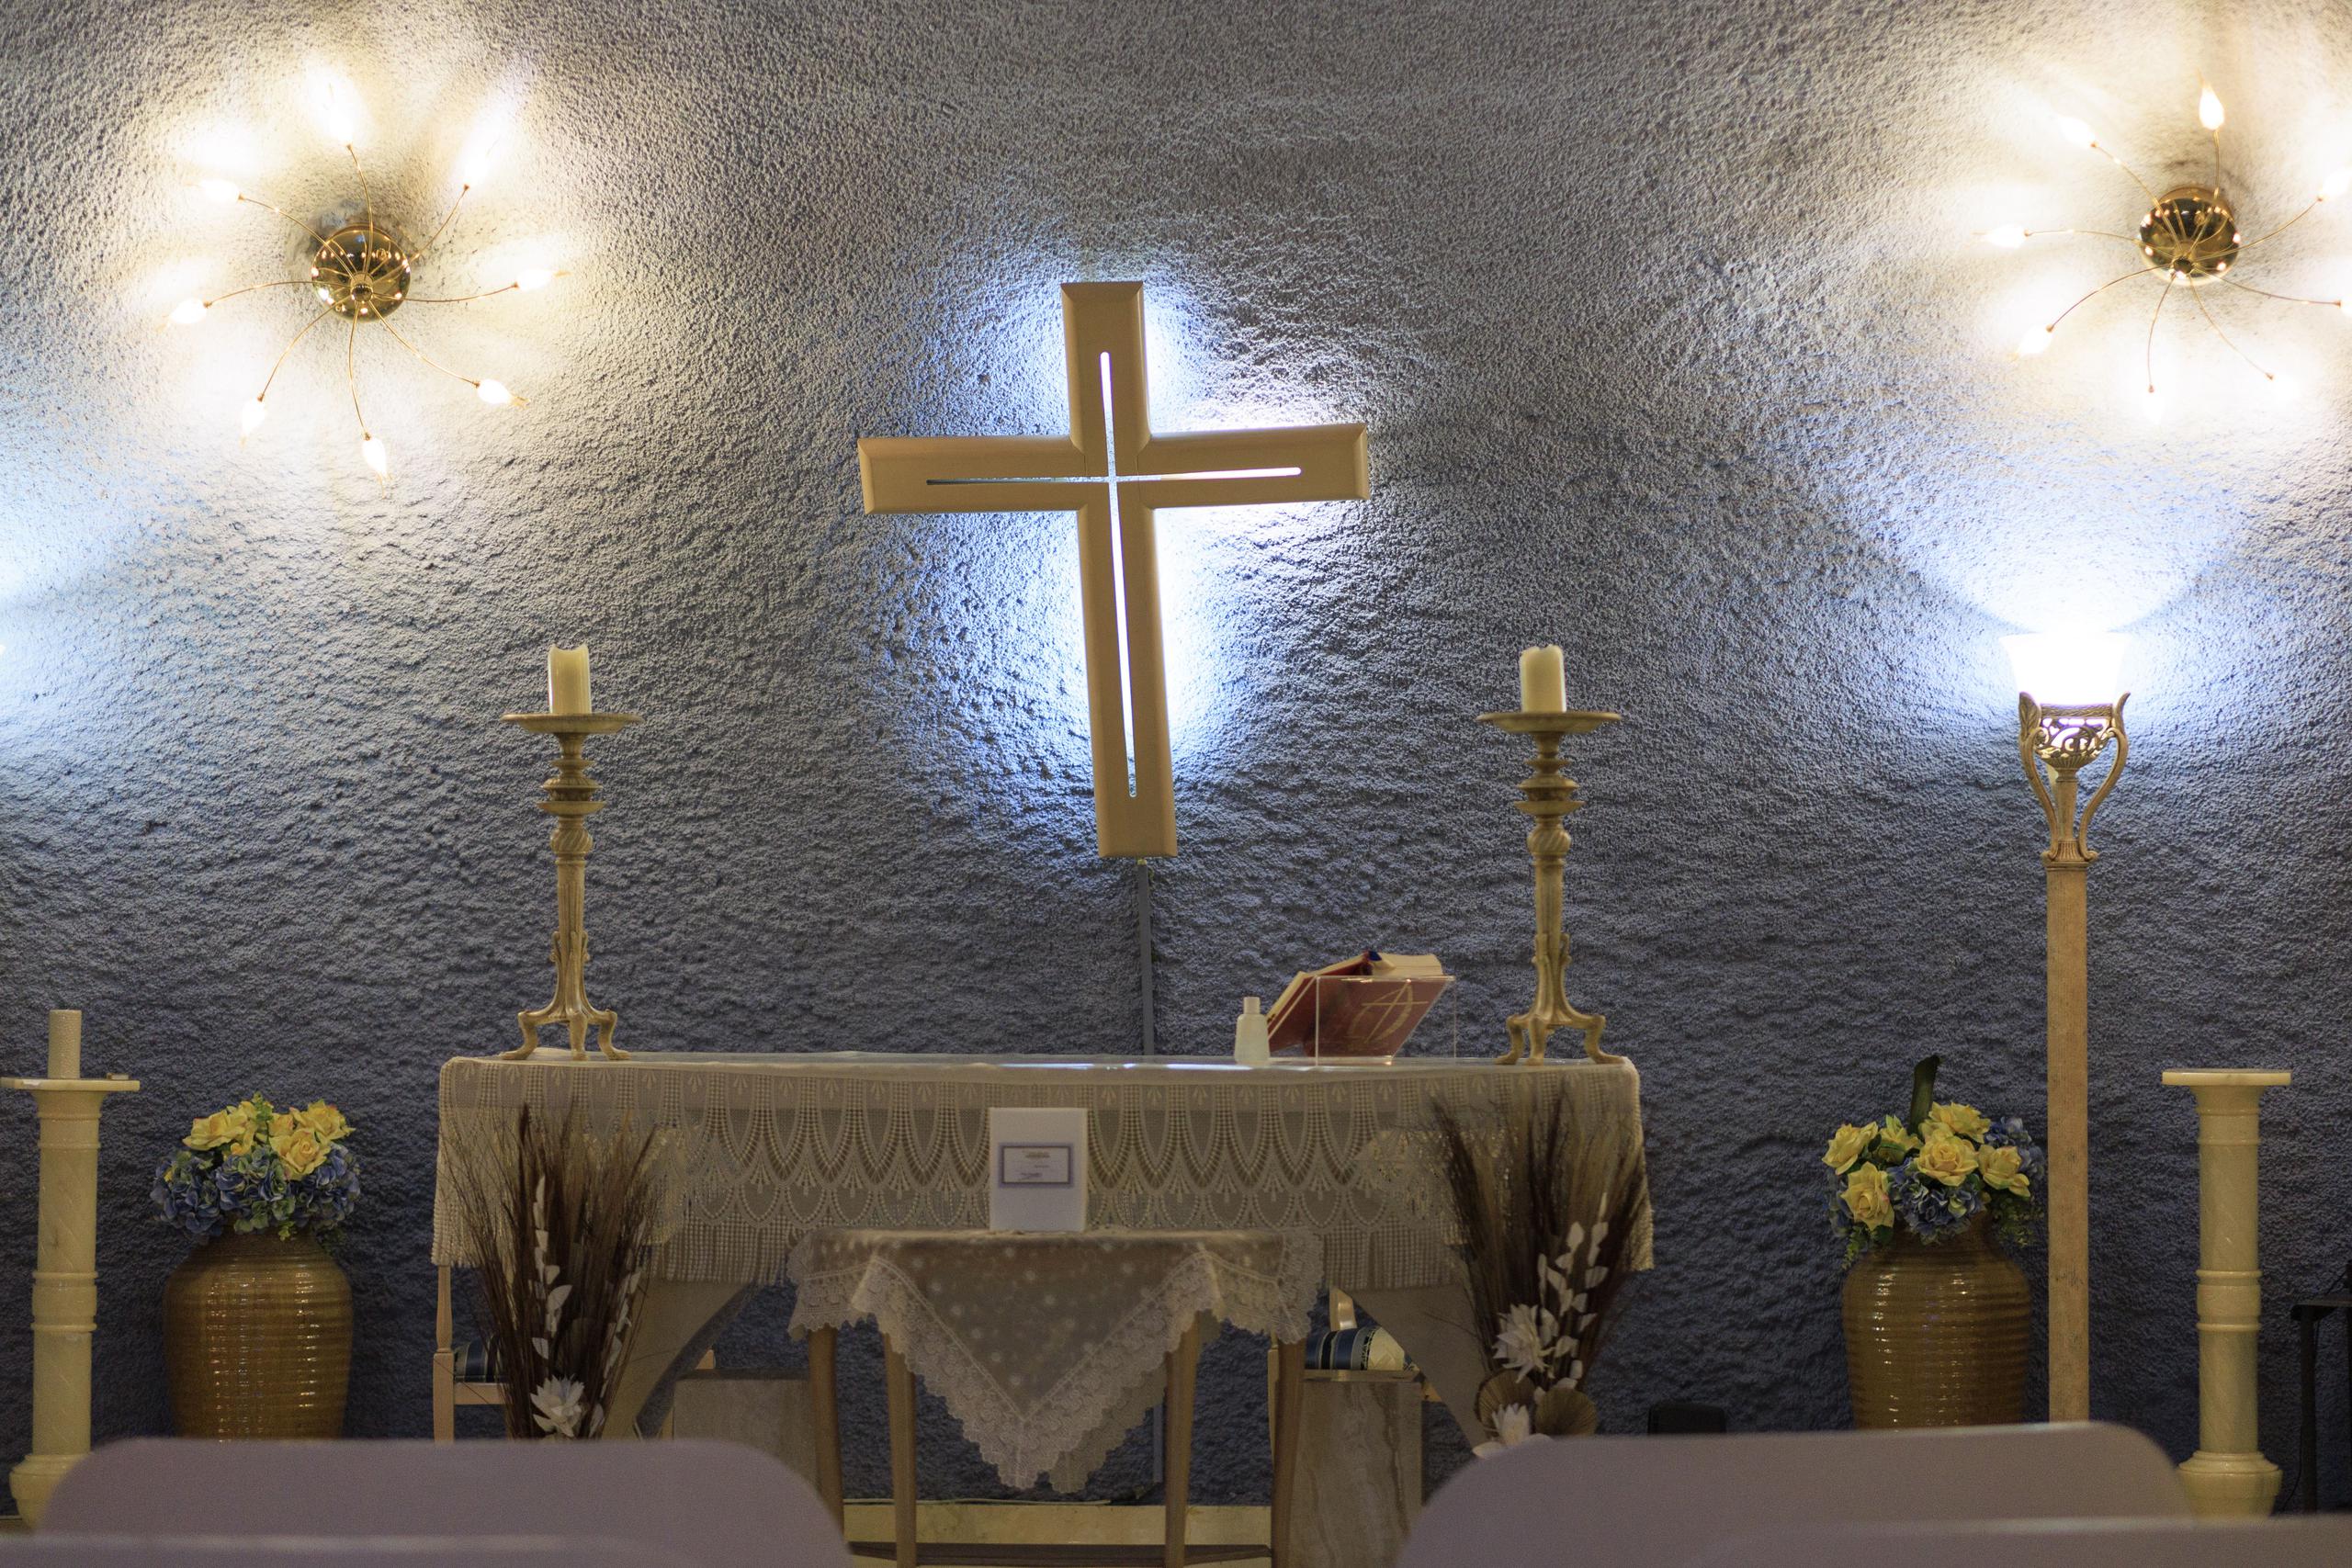 En la iglesia católica, por ejemplo, el Vaticano aceptó la cremación desde el 1983 en su Código de Derecho Canónico.